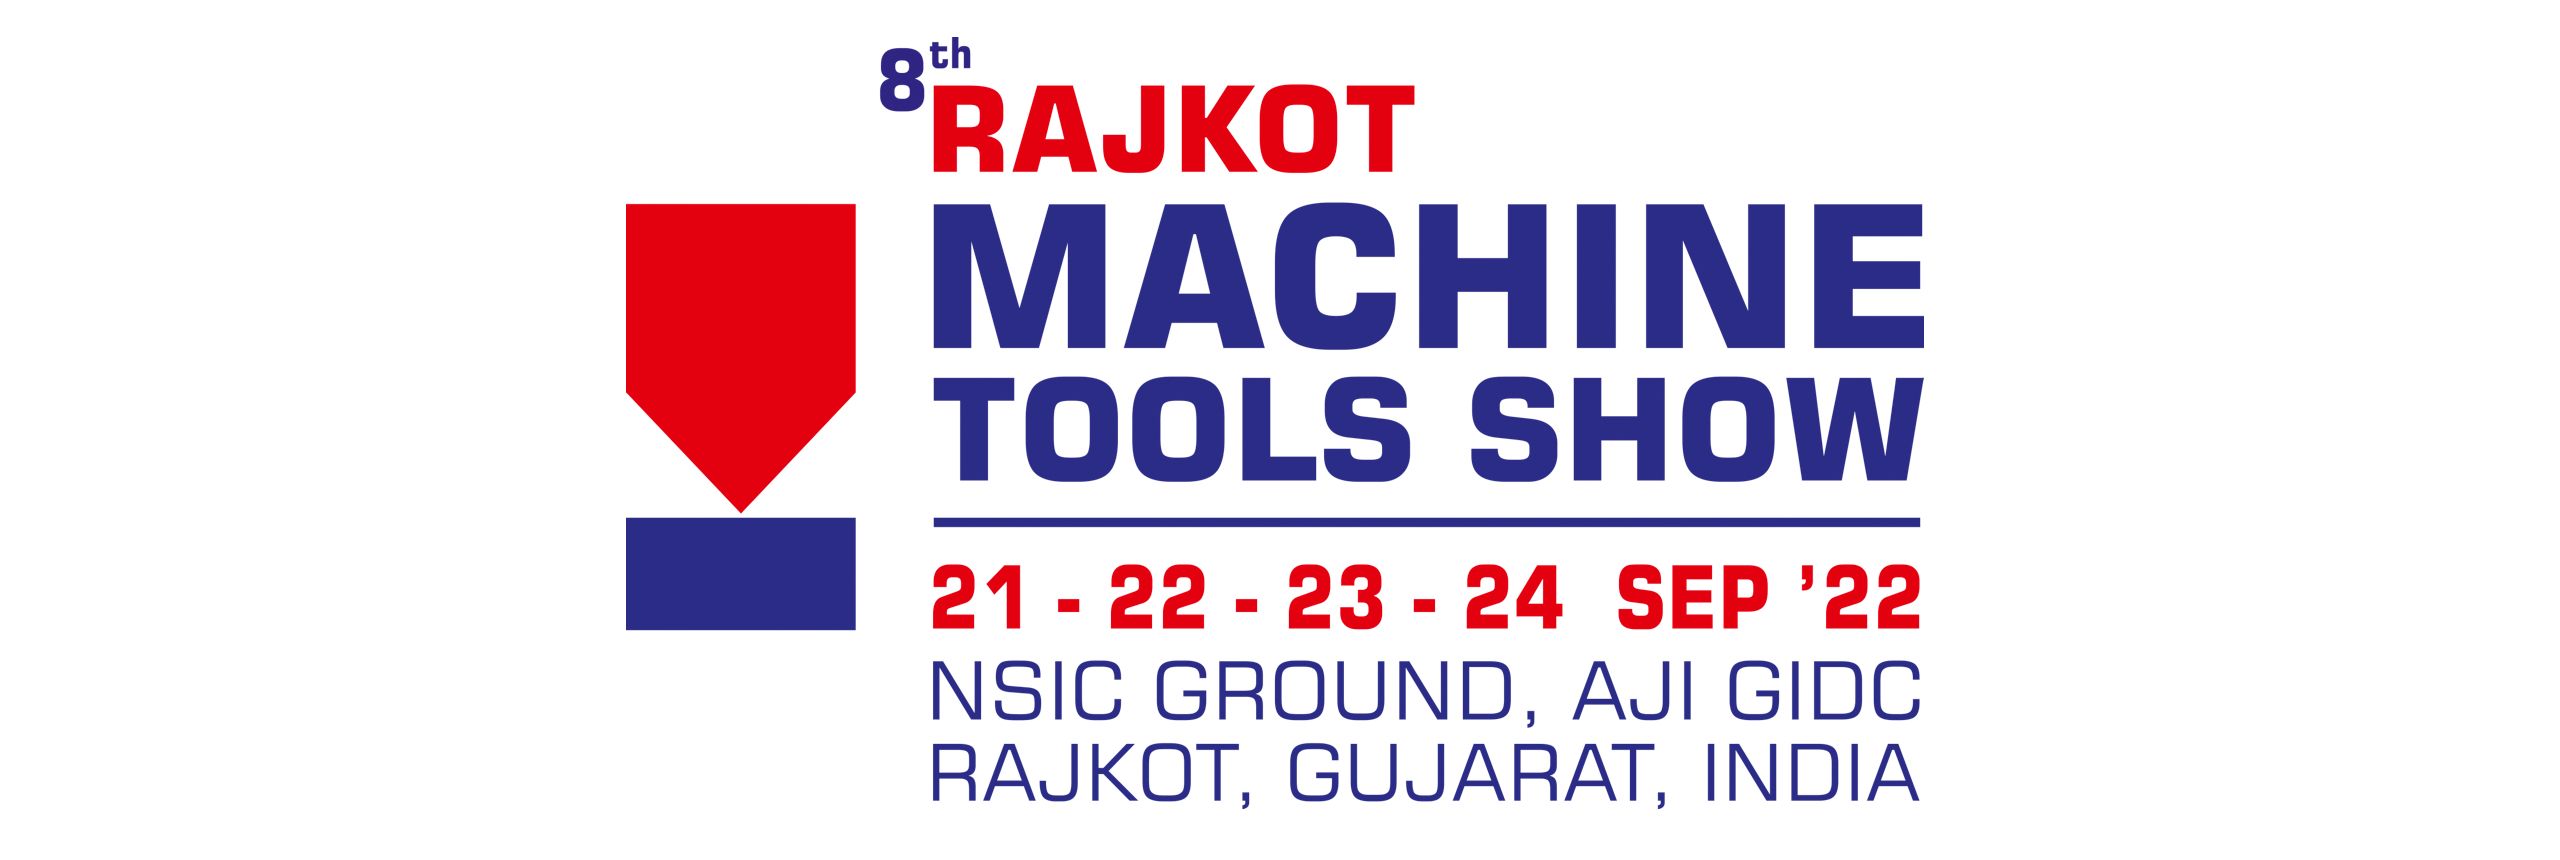 Rajkot Machine Tools Show 2022